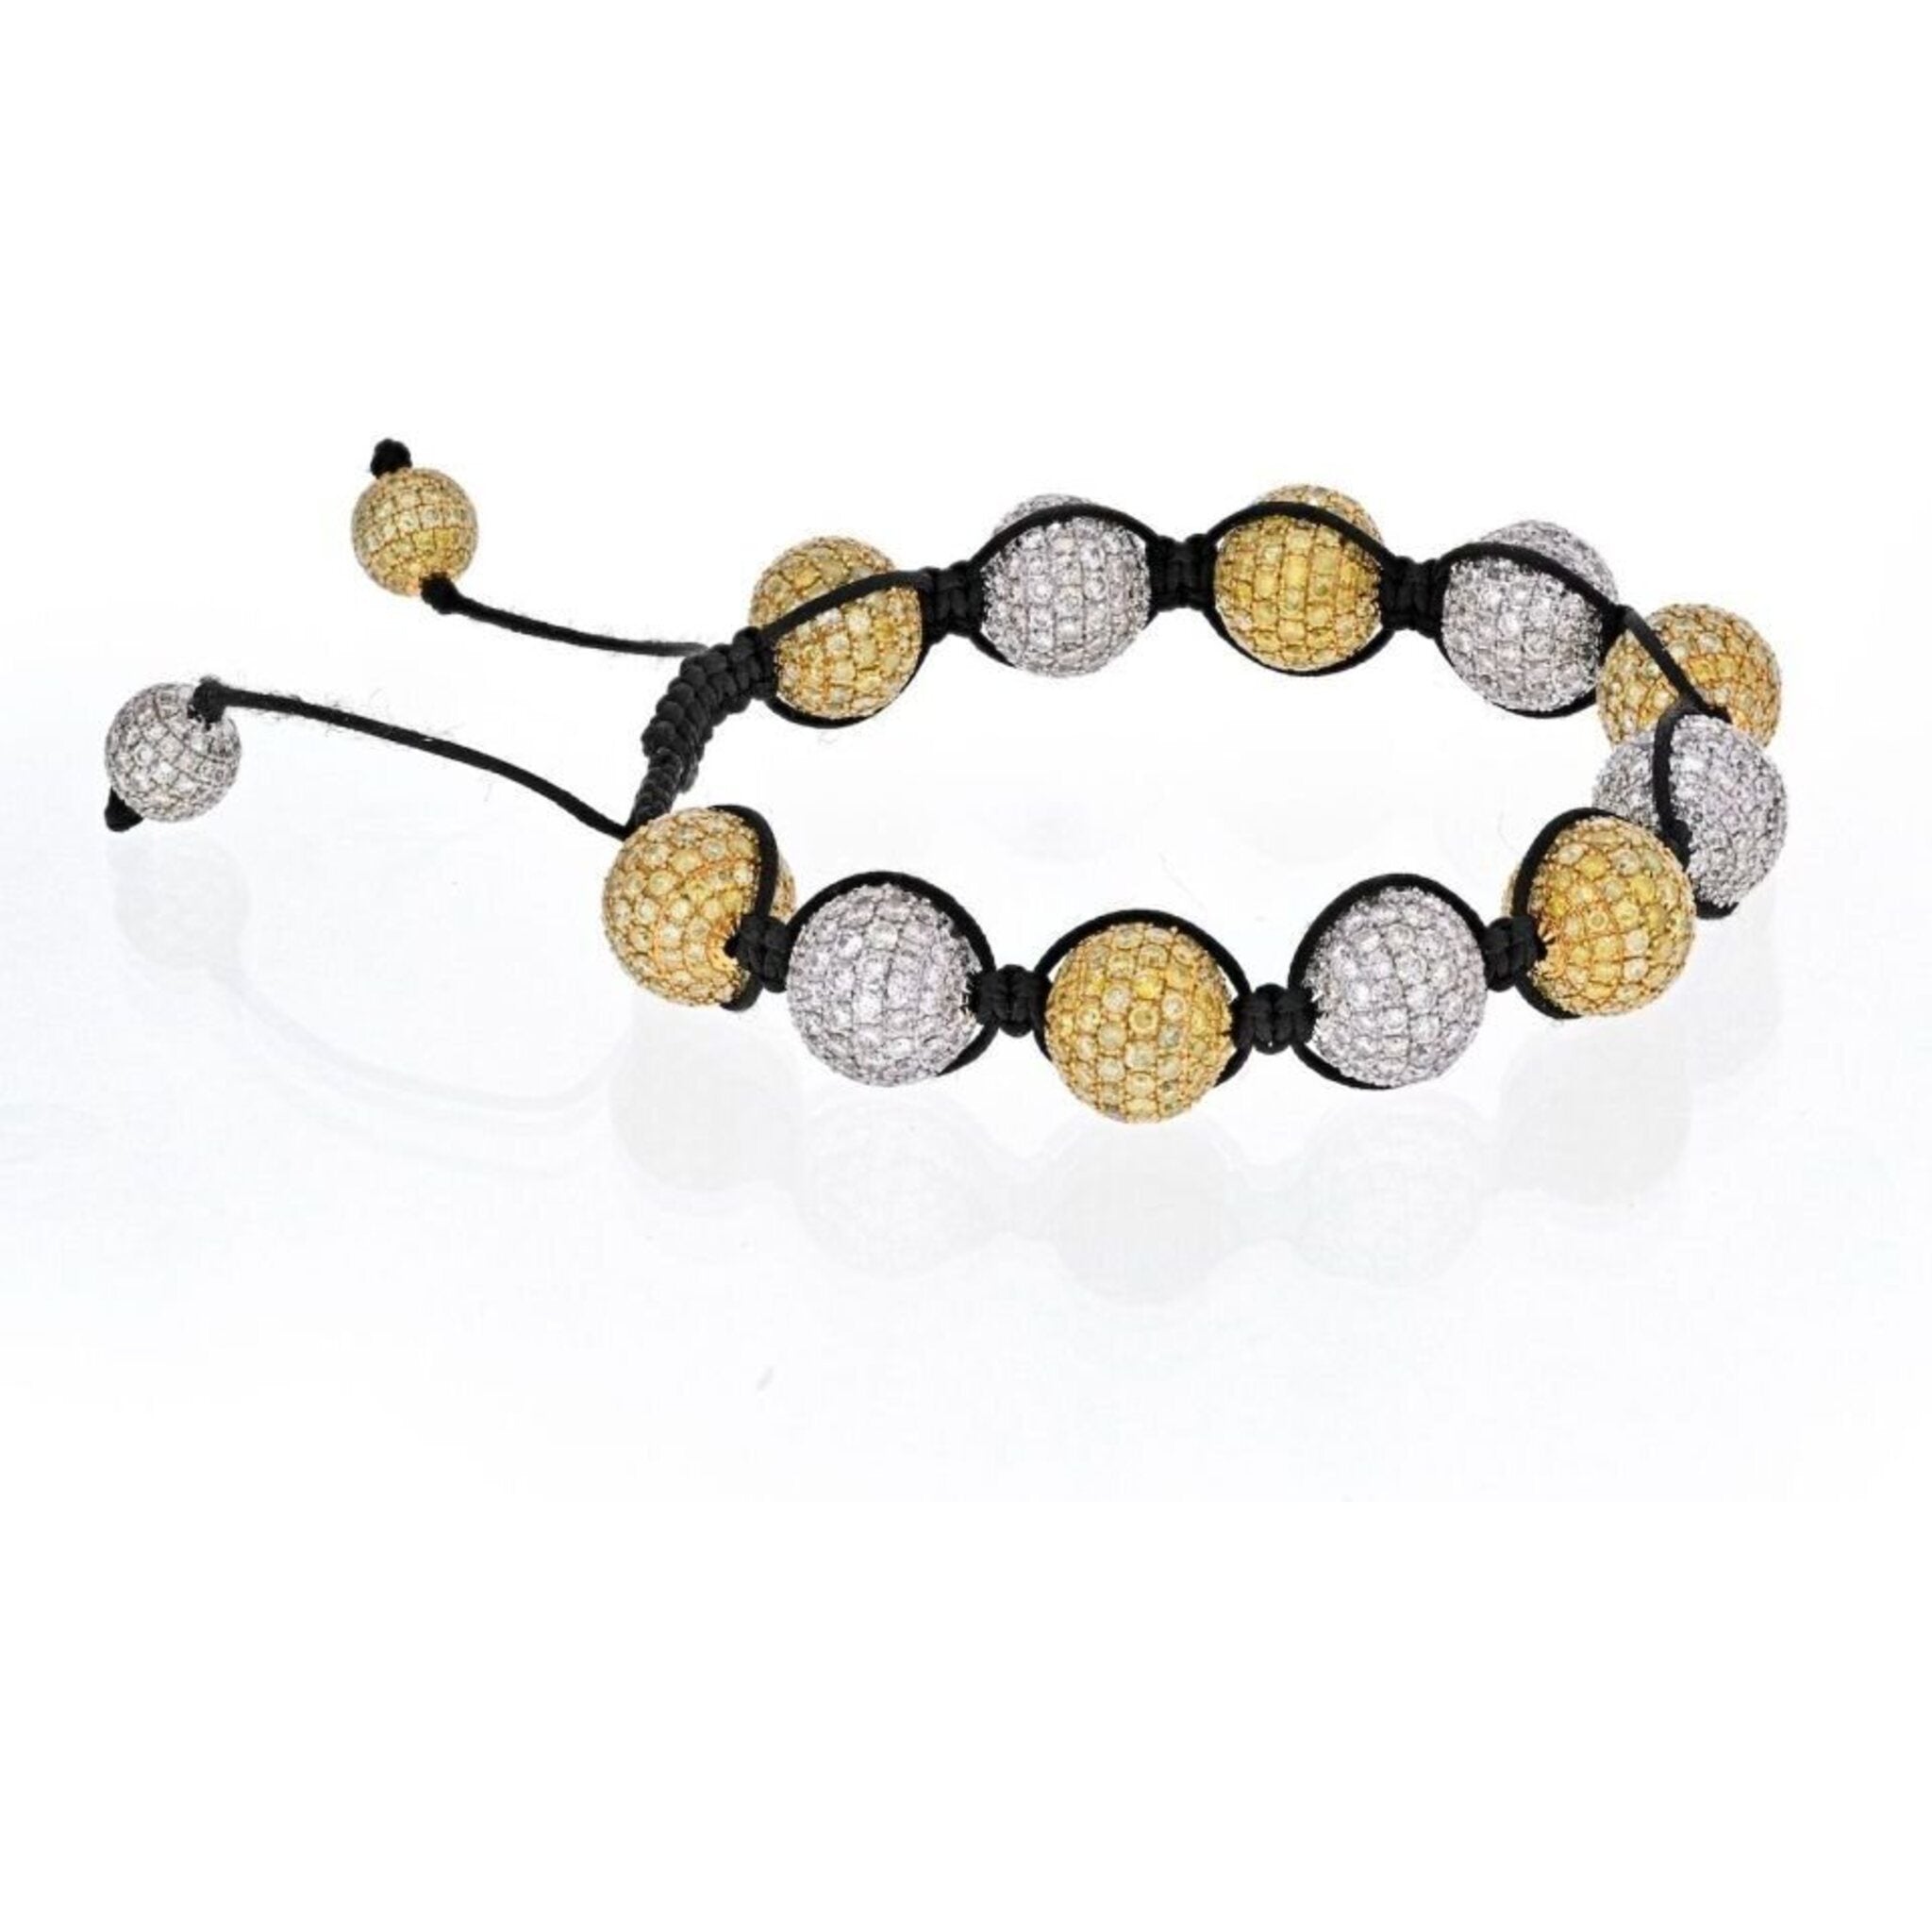 Black and White Crystals Clay Beads Shamballa Bracelet - Ephori London -  Luxury custom natural stone beaded bracelets